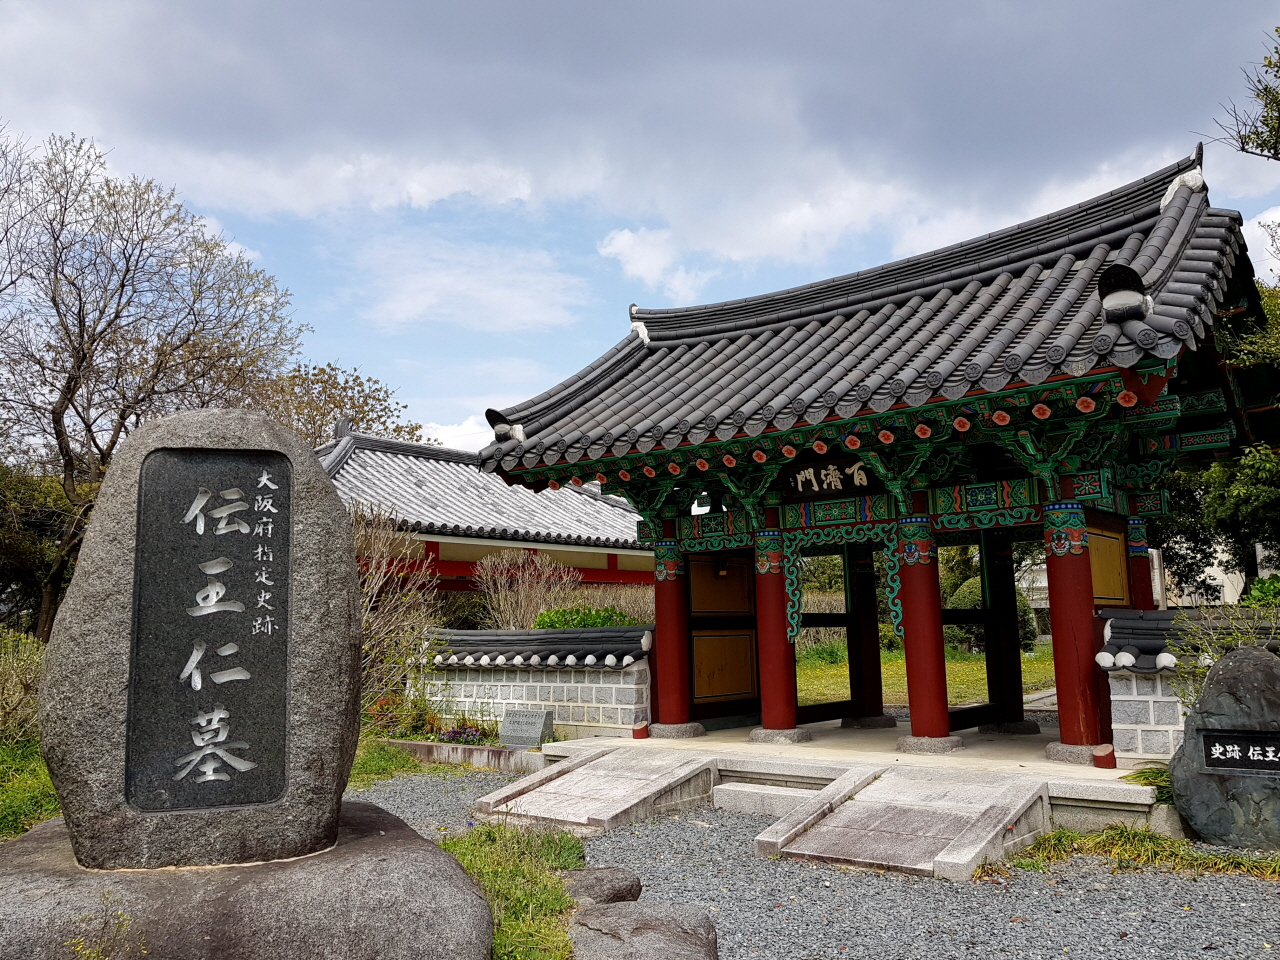 오사카 시에서 동북쪽으로 32km 떨어진 오사카부 히라카타 시에 위치한 왕인박사묘와 백제문. 2006년 10월 한일 양국 문화친선협회가 건립한 백제문을 들어서면 가운데 '박사왕인지묘' 비석이 서 있는데 이곳을 왕인박사묘로 추정하고 있다.   